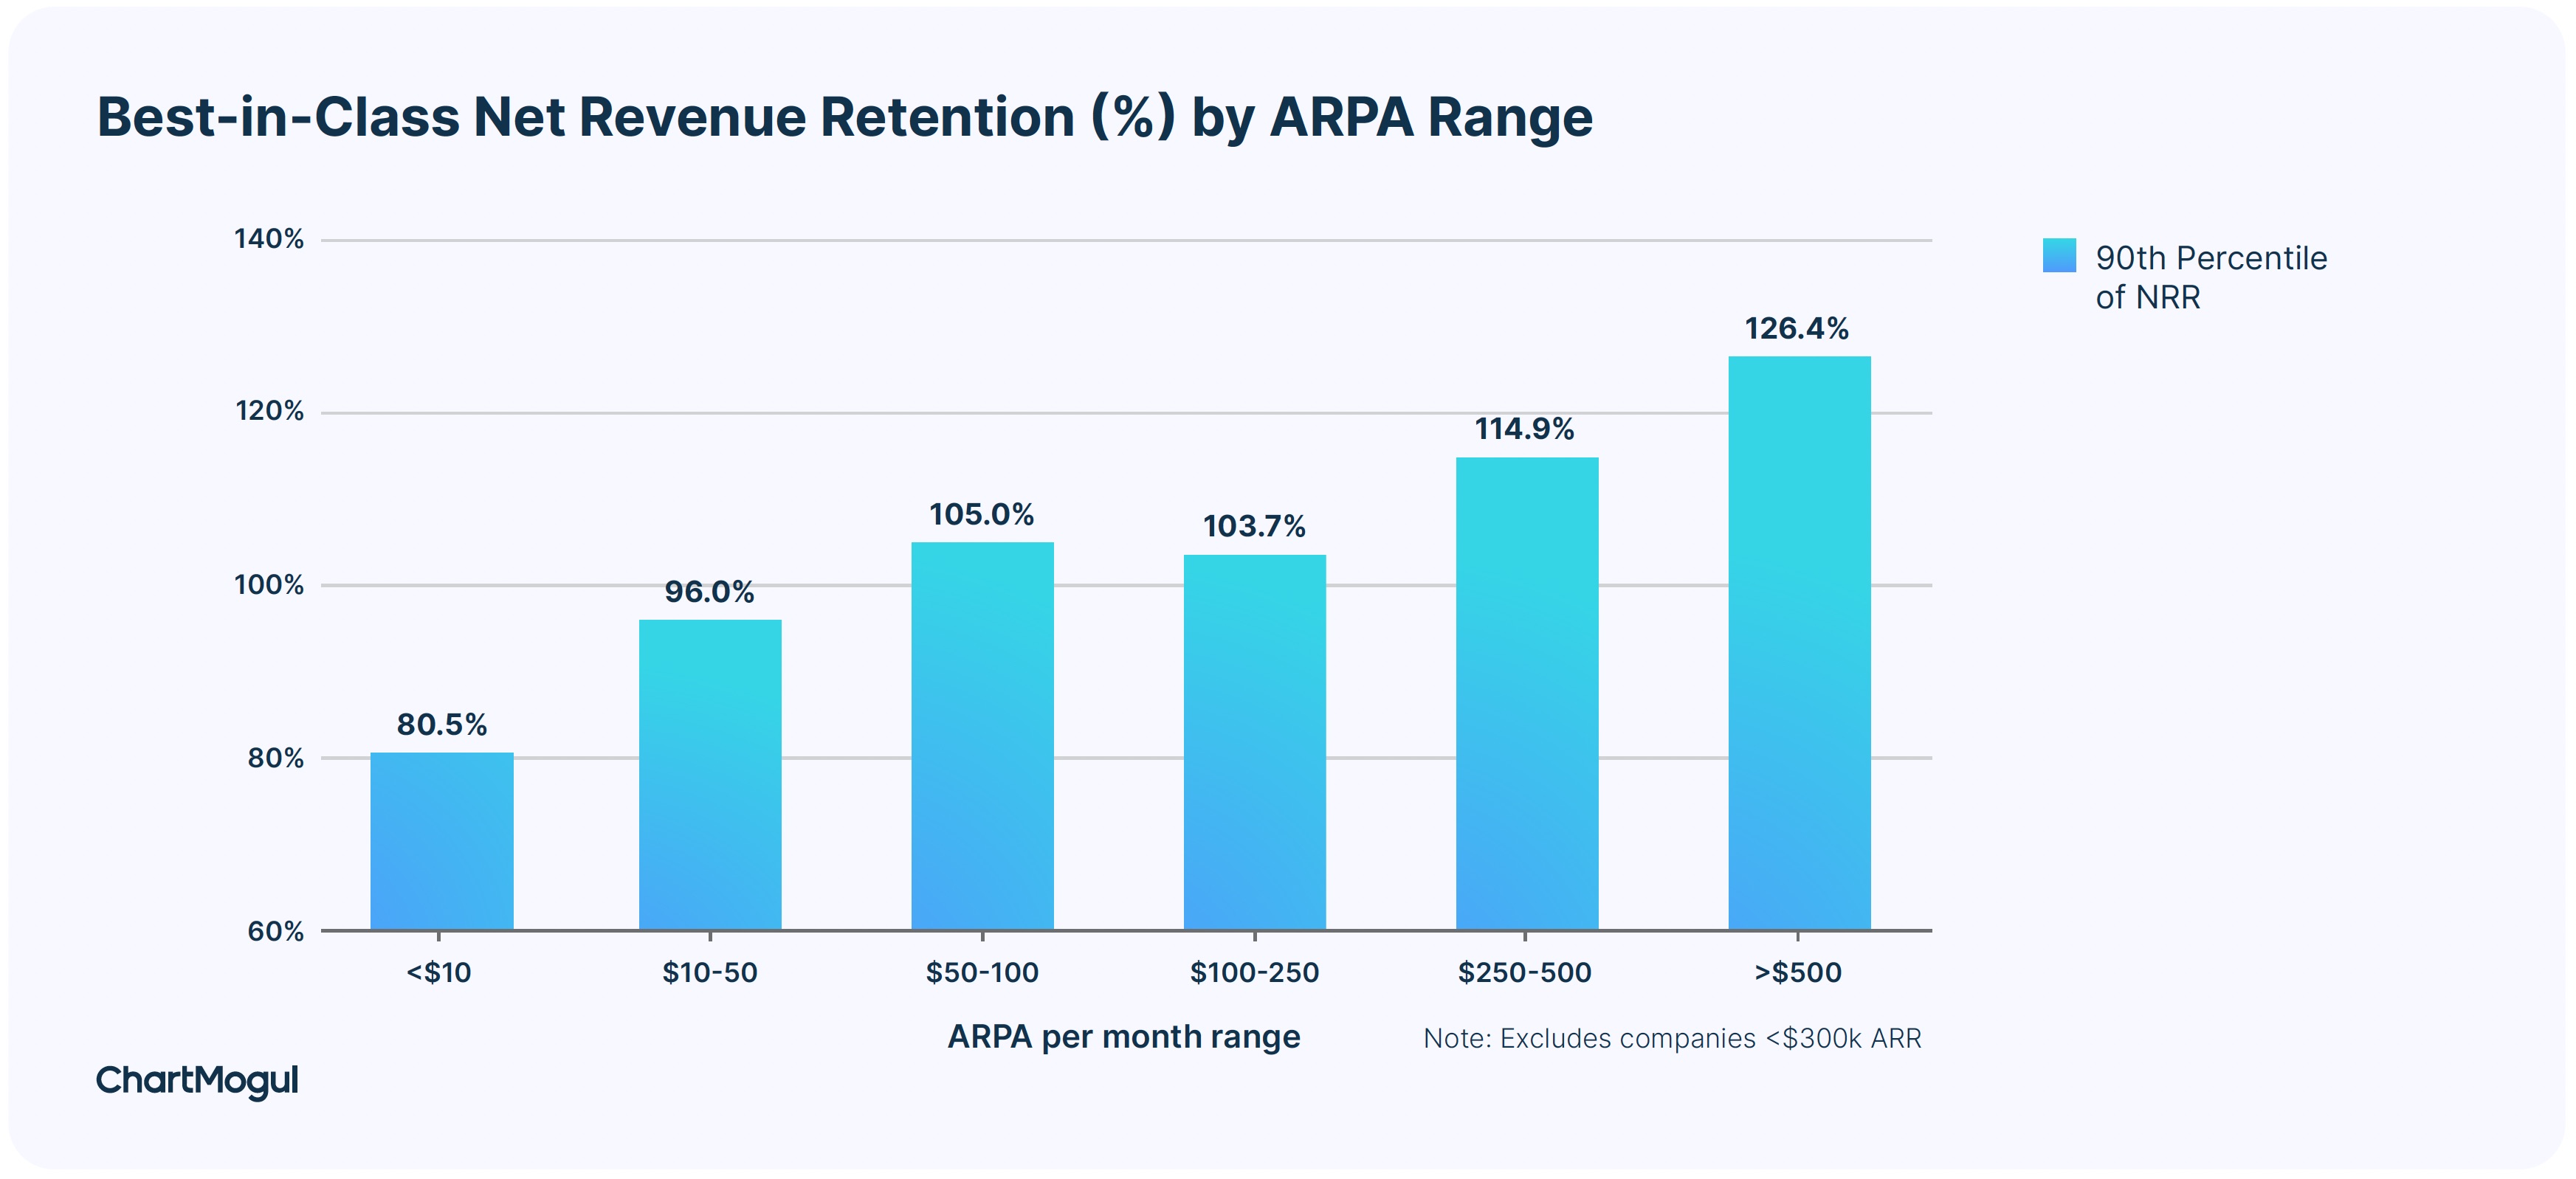 Best-in-class net revenue retention (%) by ARPA range.